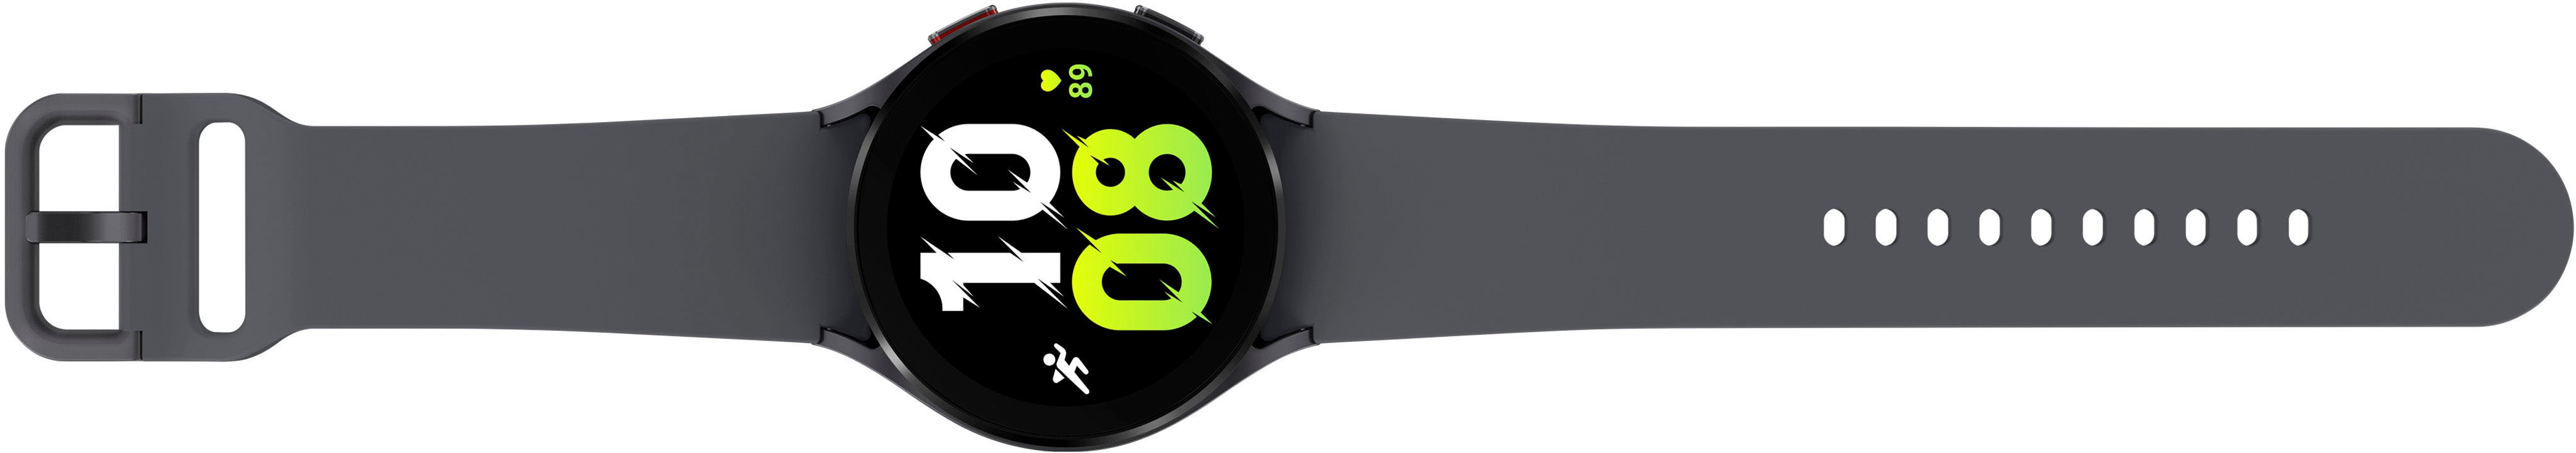 Samsung Galaxy Watch5 Aluminum Smartwatch 44mm BT Graphite SM